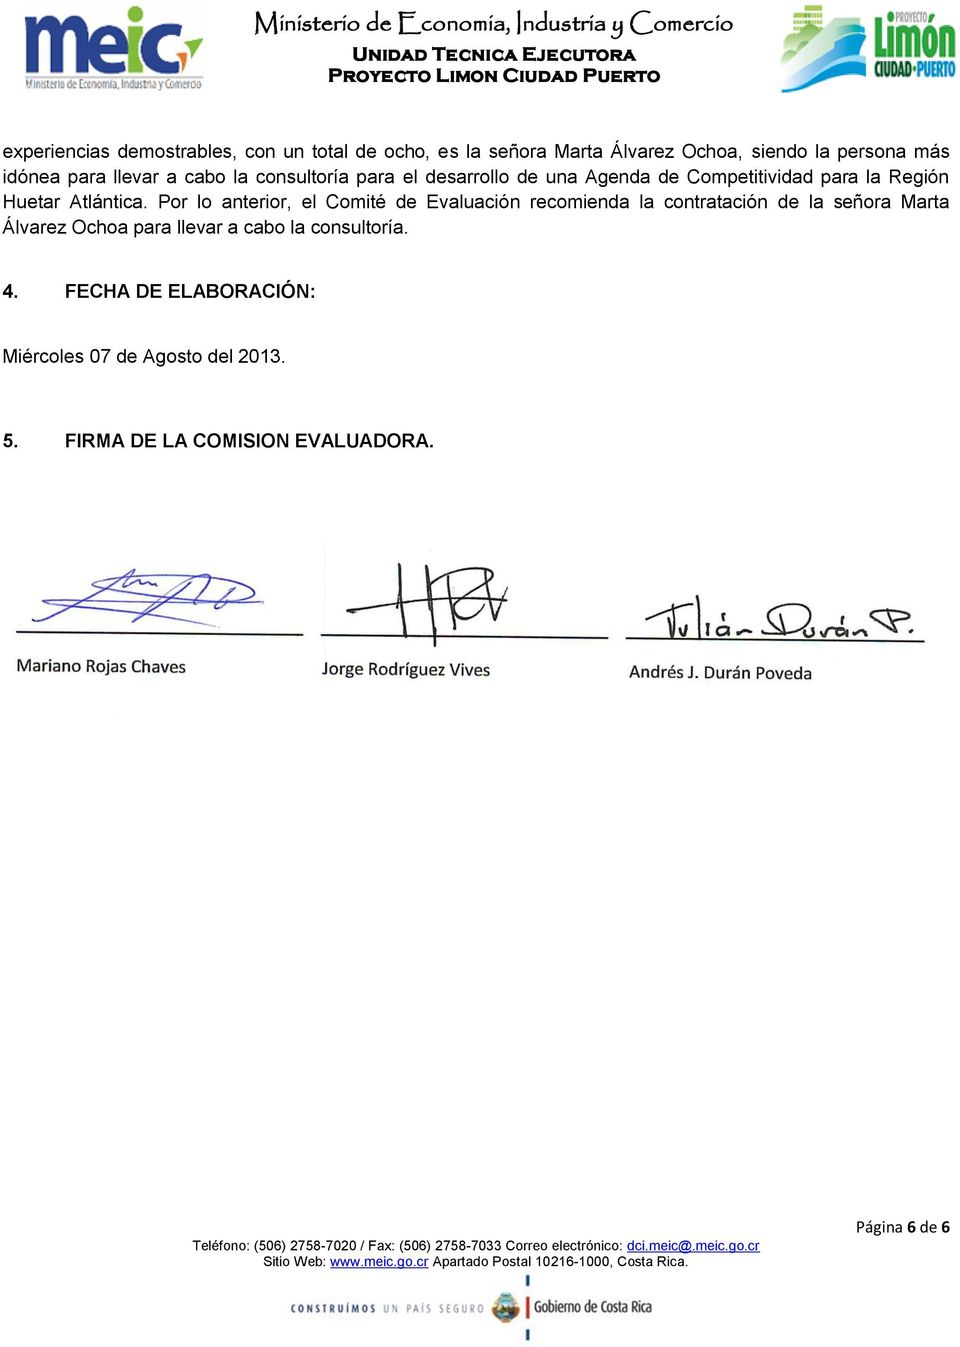 Por lo anterior, el Comité de Evaluación recomienda la contratación de la señora Marta Álvarez Ochoa para llevar a